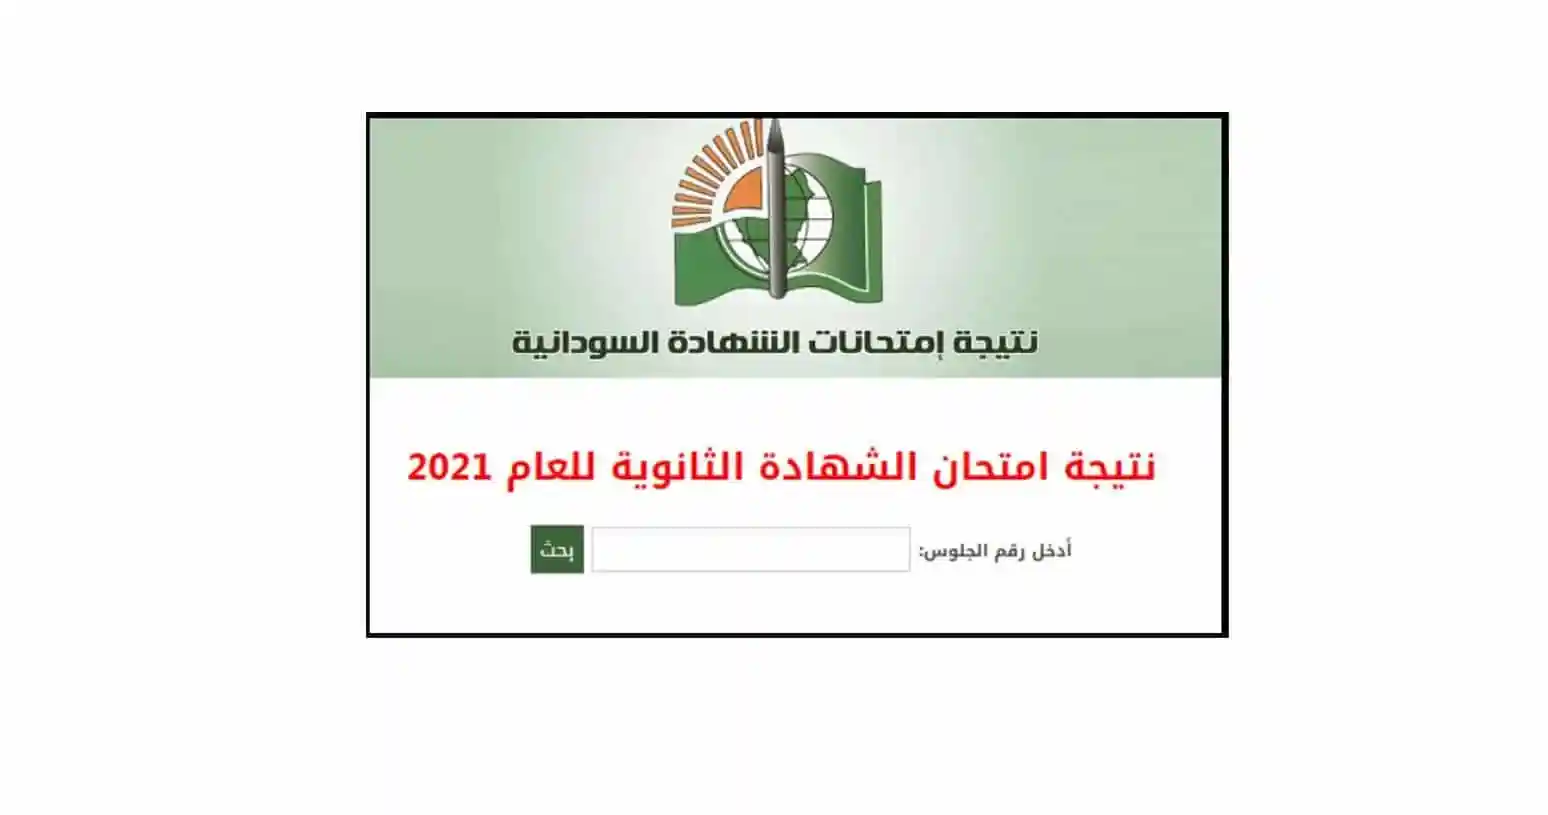 نتيجة شهادة الأساس 2022 الجزيرة الخرطوم وجميع الولايات السودان